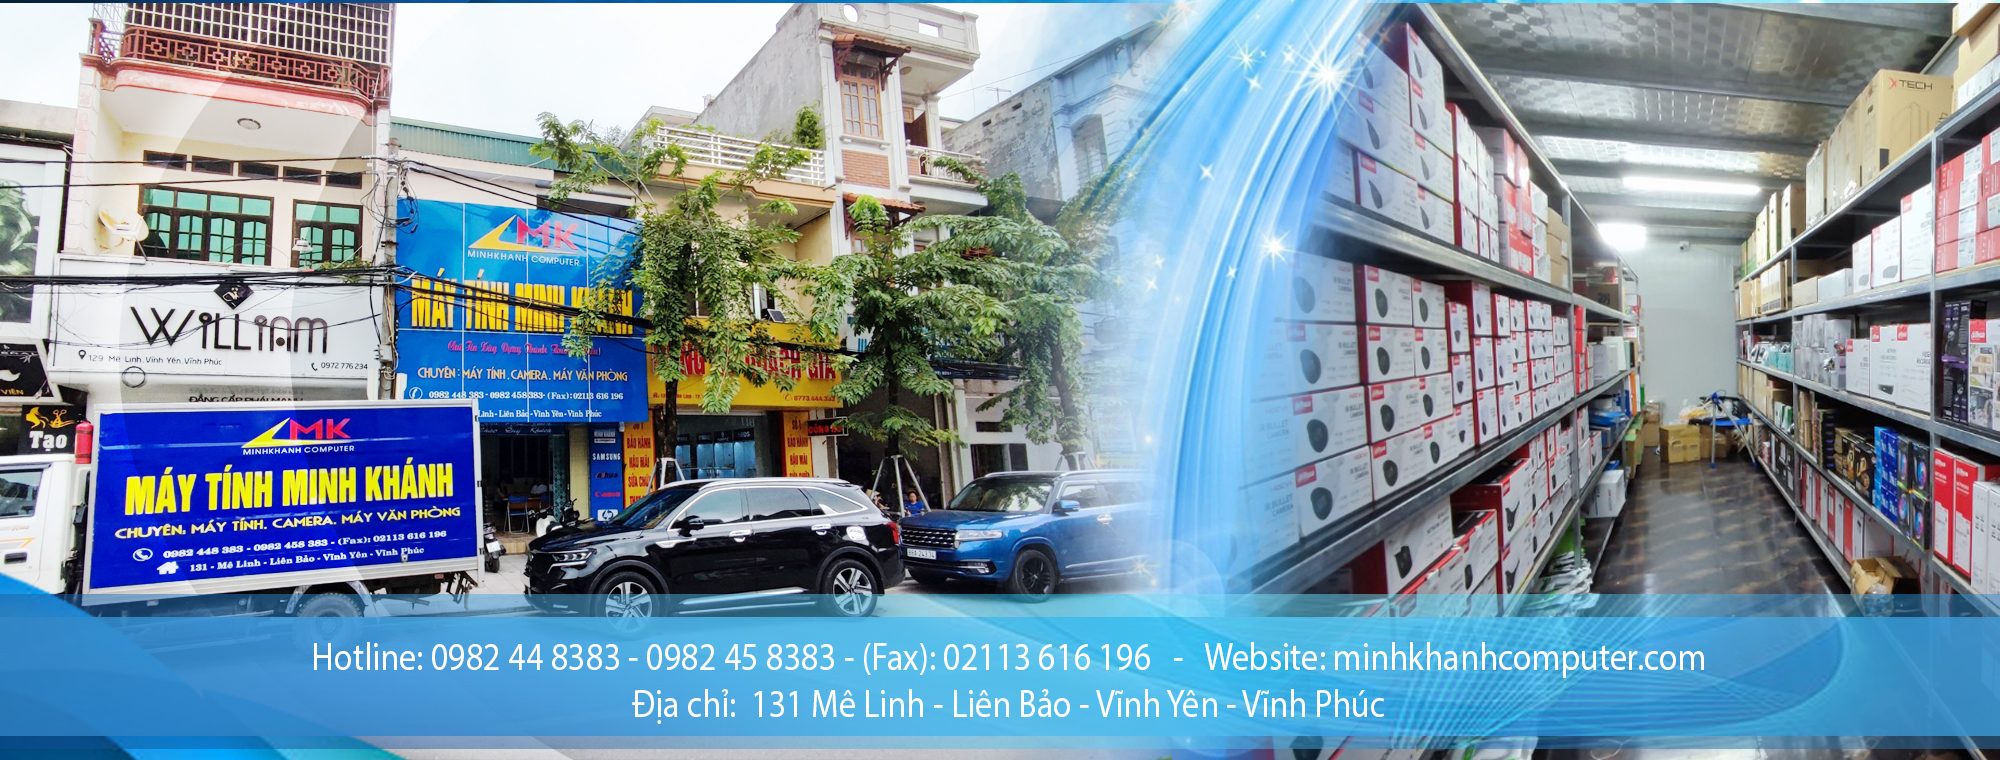 Banner Noi Dung May Tinh Minh Khanh 19 11